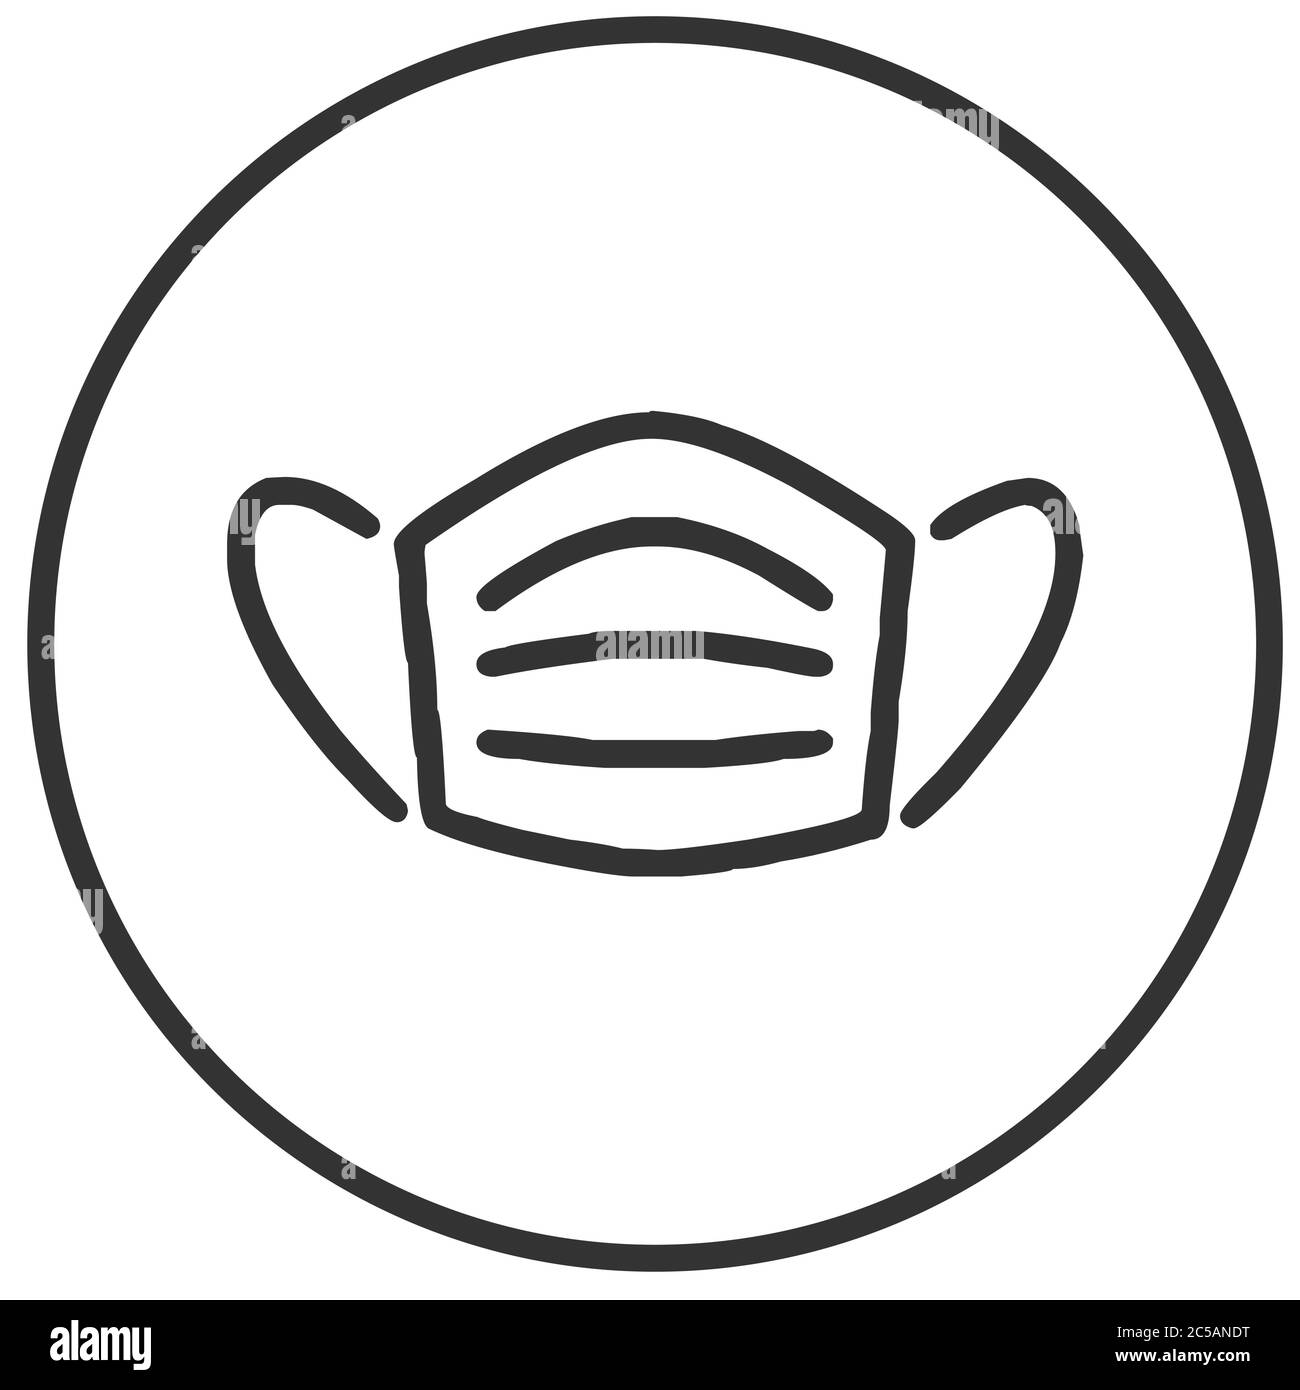 Face Mask inside circular button icon vector illustraion Stock Vector